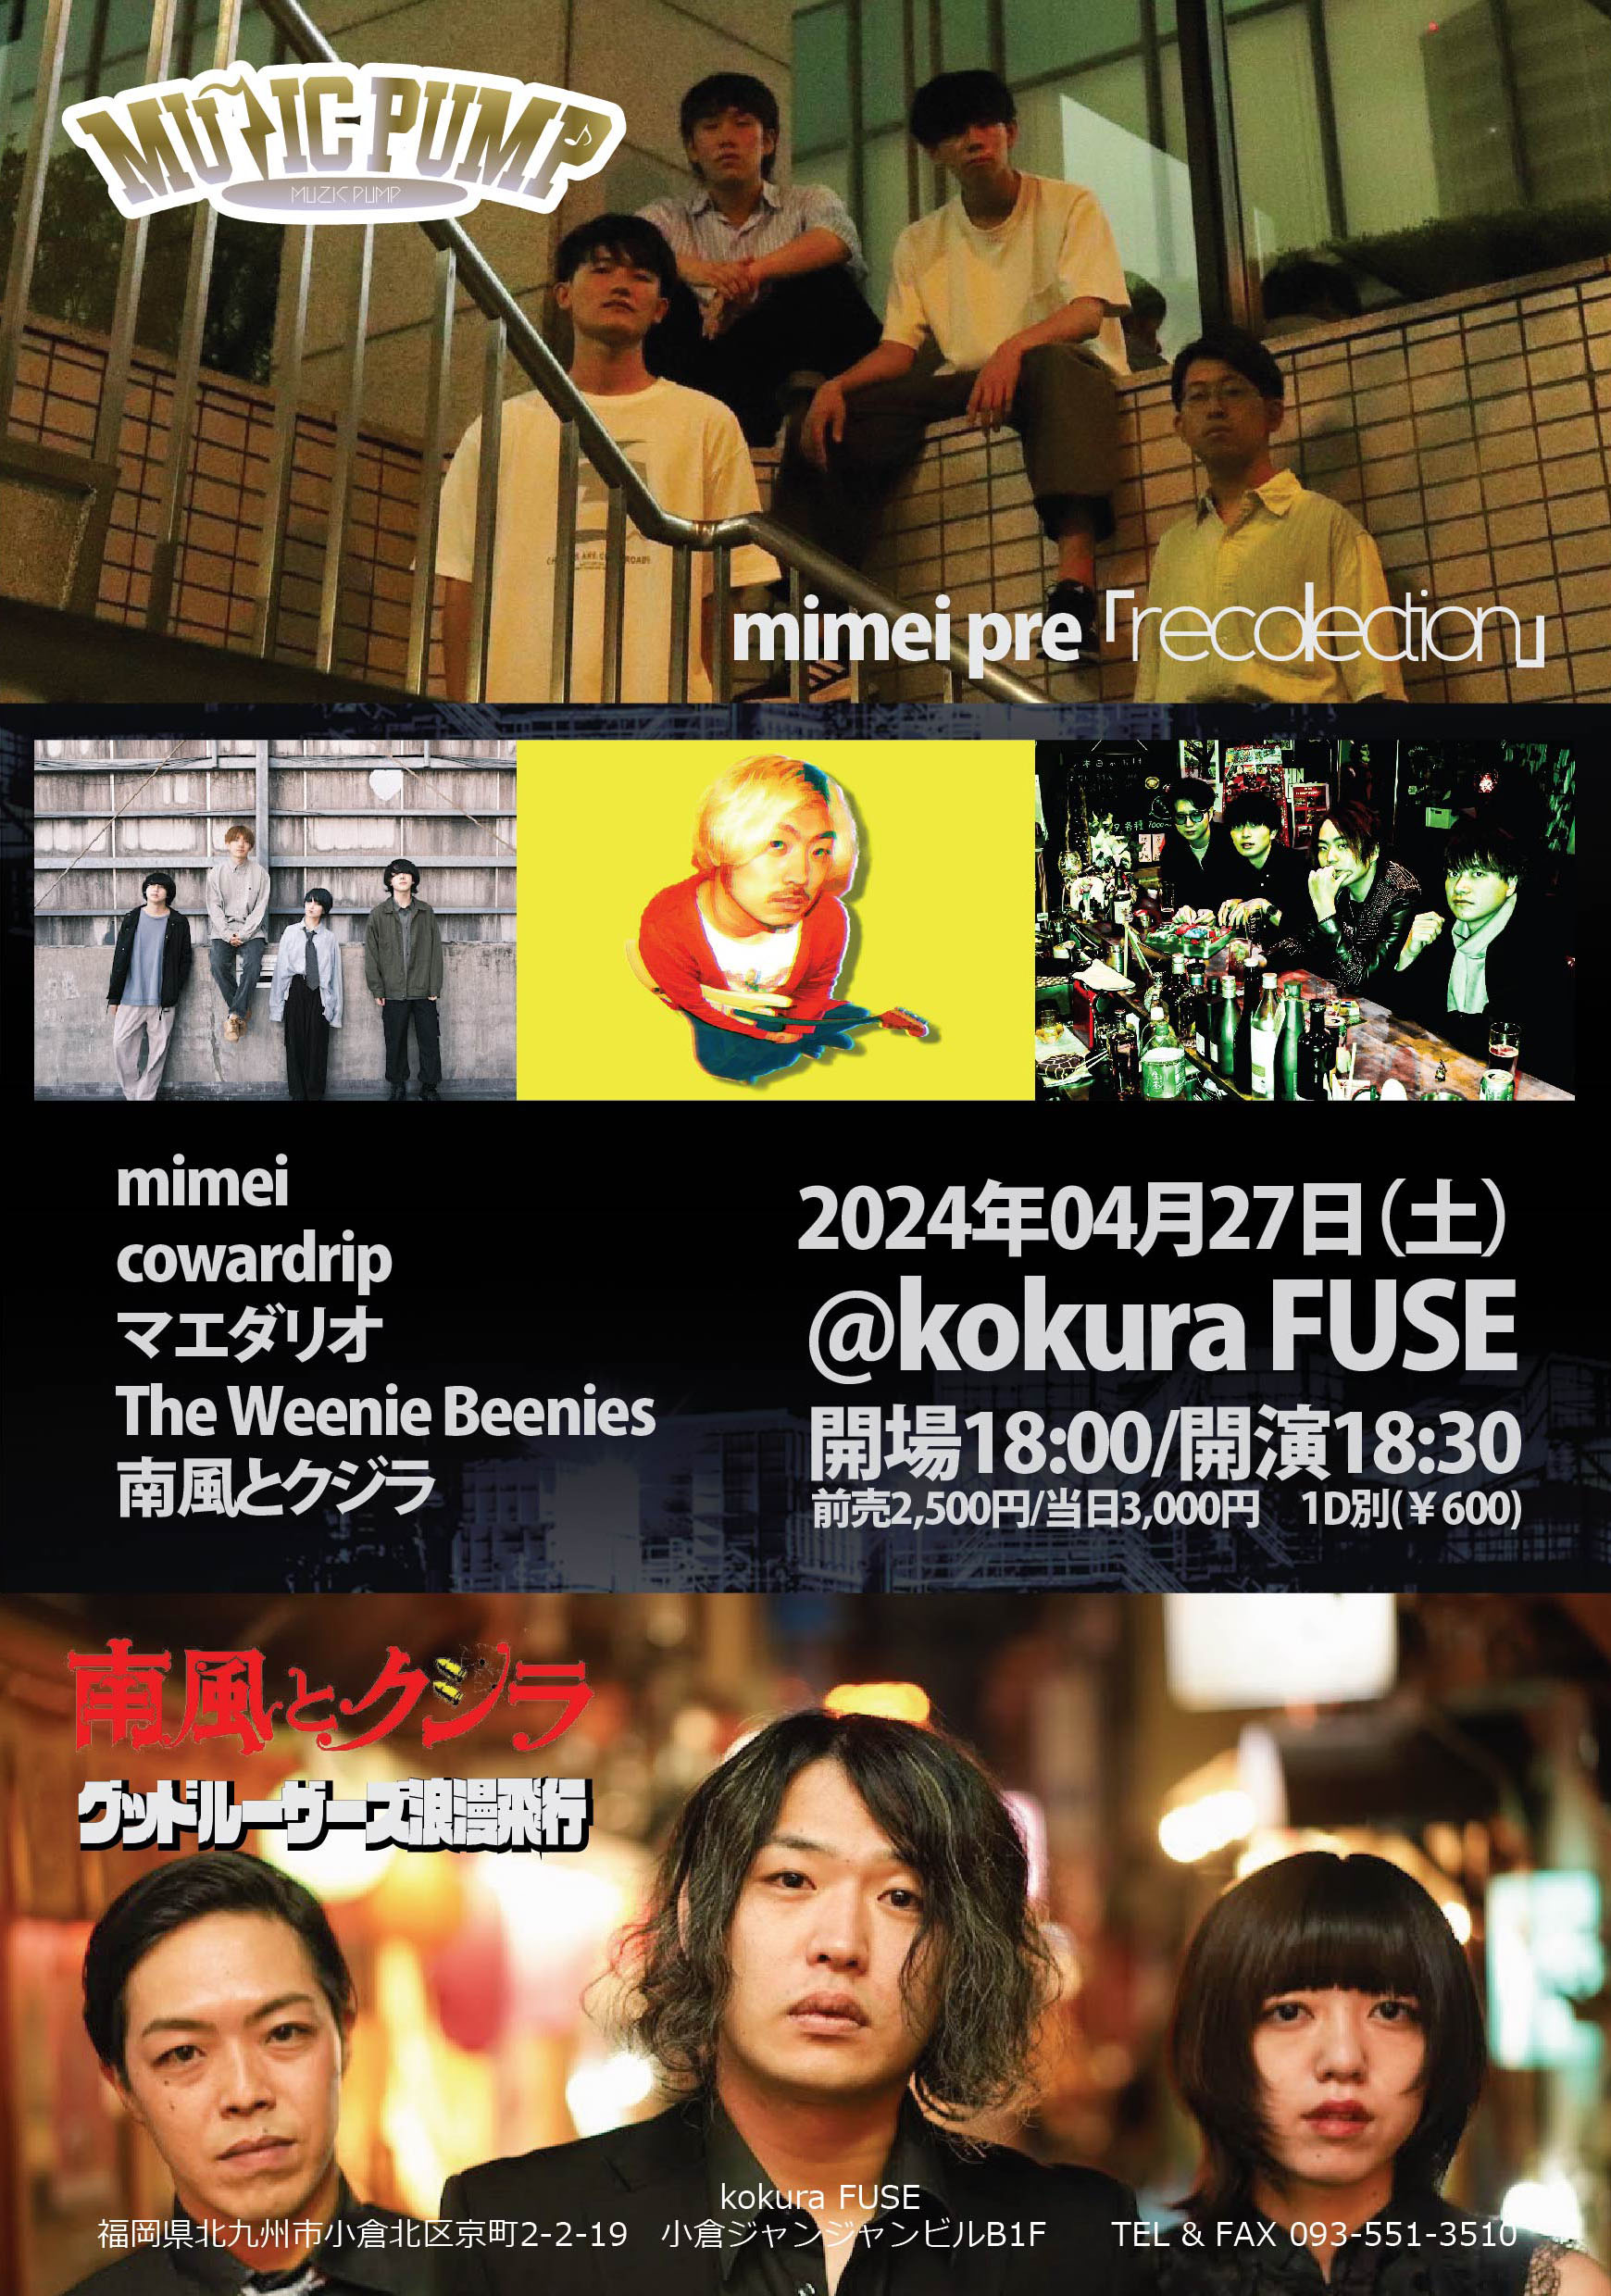 2024年04月27日 (土) MUZIC PUMP | ライブ&イベントスペース 小倉 